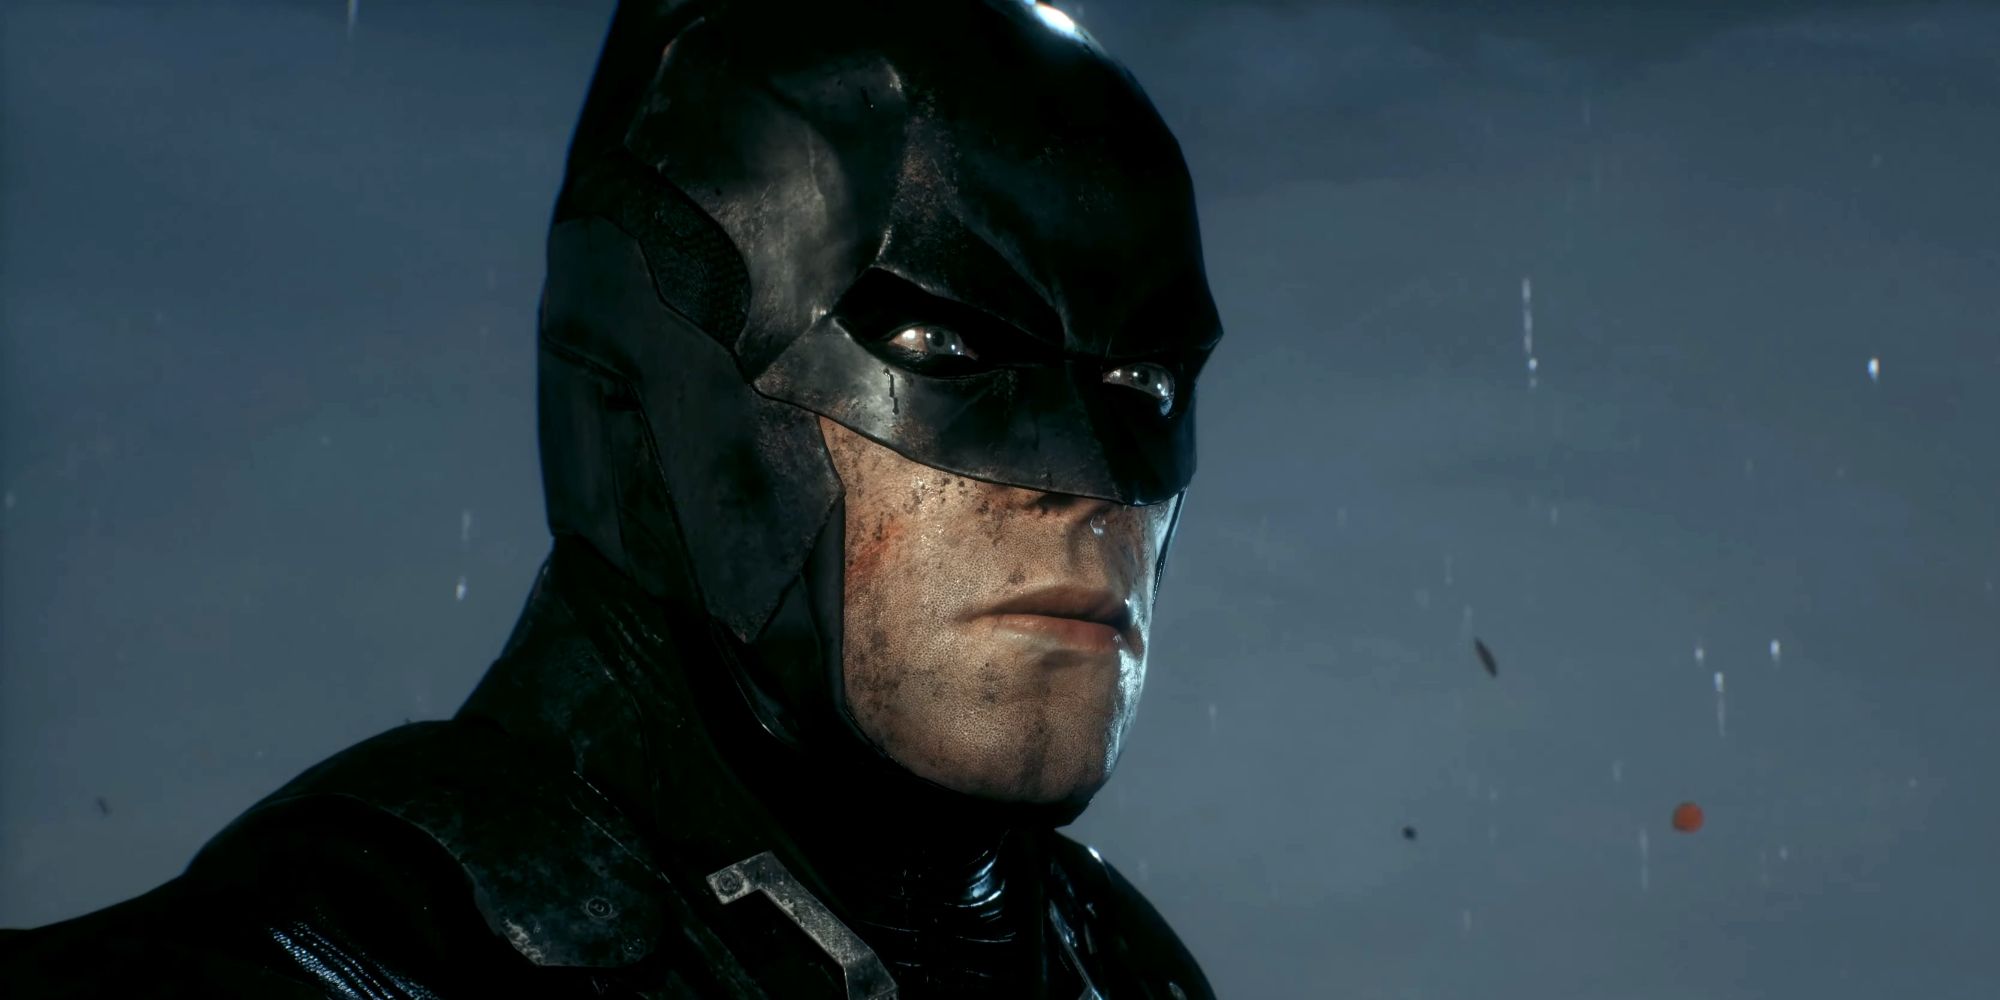 Batman vers la fin d'Arkham Knight, avec un costume endommagé et de la saleté sur le visage.